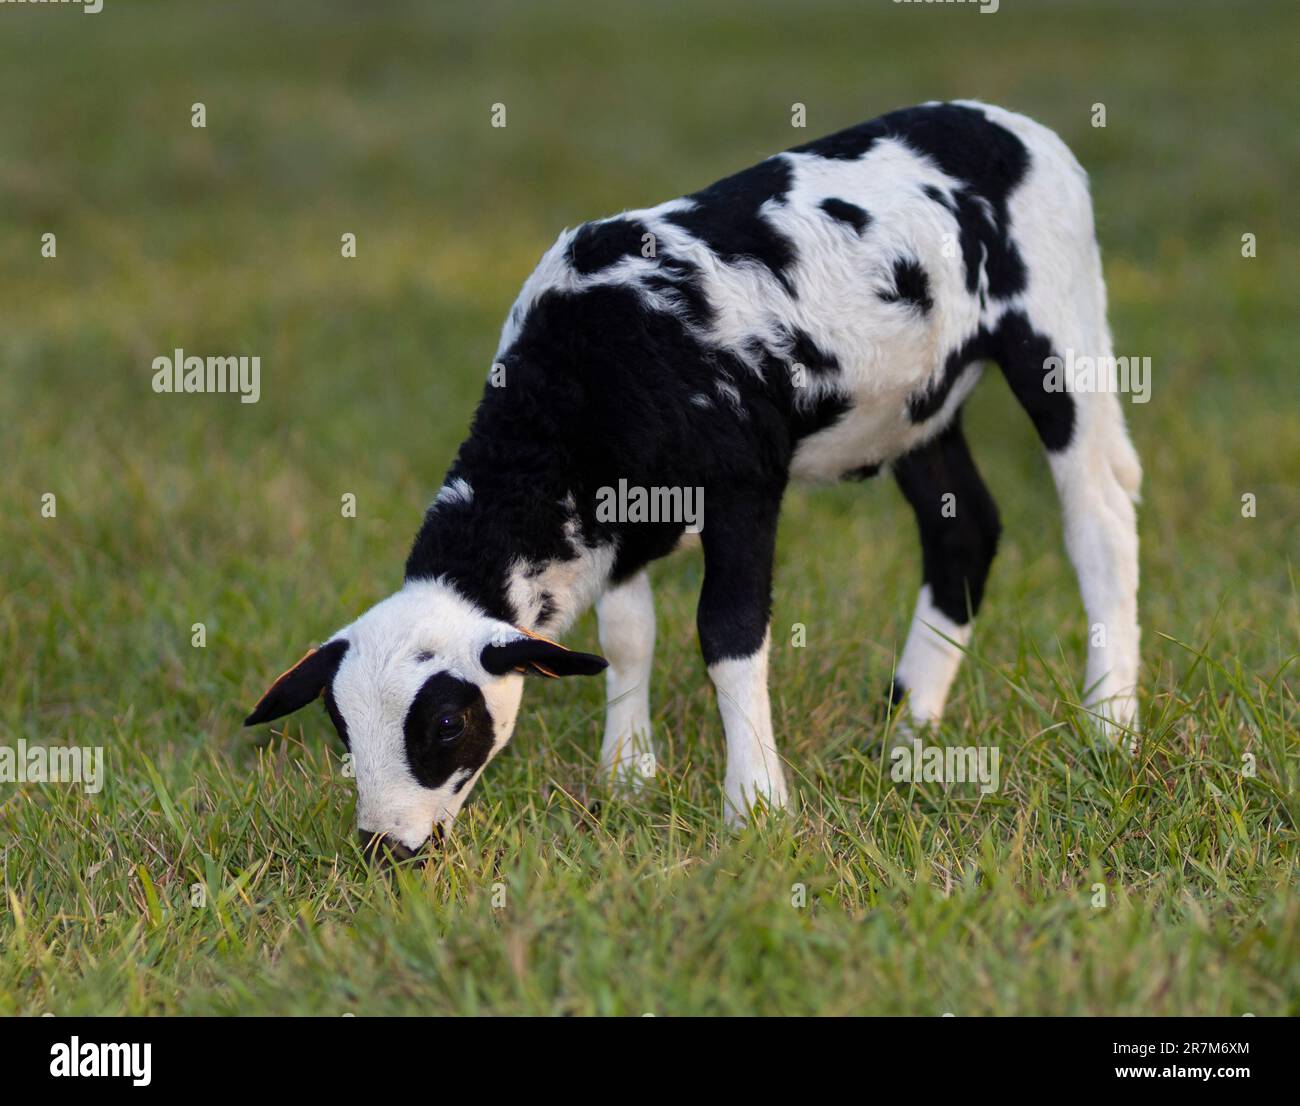 Cordero de oveja manchado blanco y negro comiendo hierba en un pasto verde de verano Foto de stock